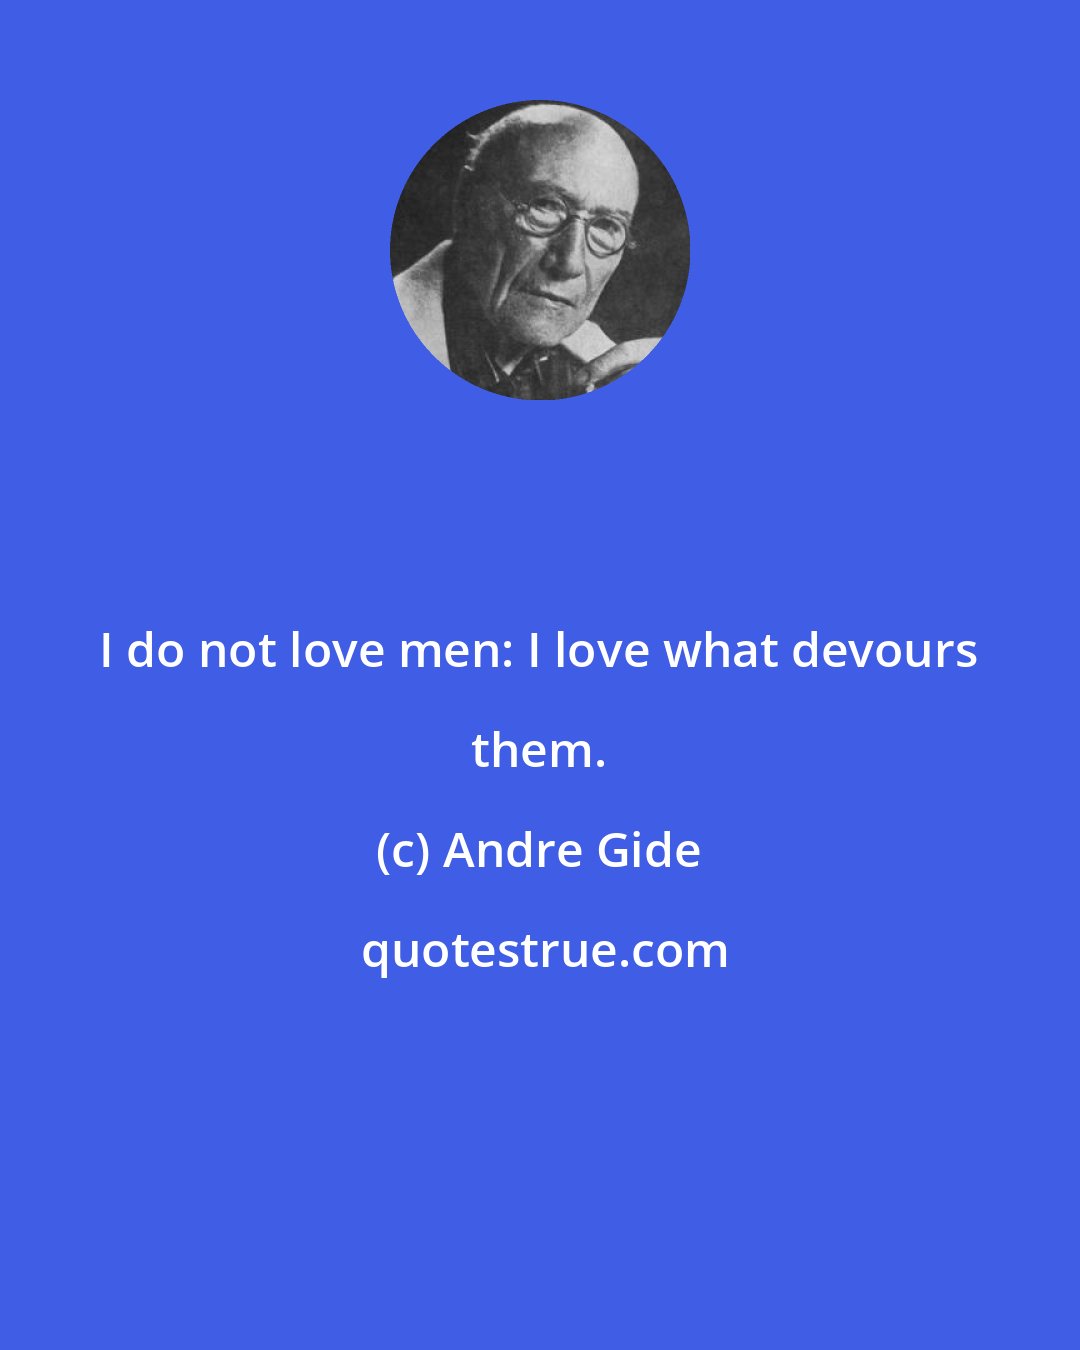 Andre Gide: I do not love men: I love what devours them.